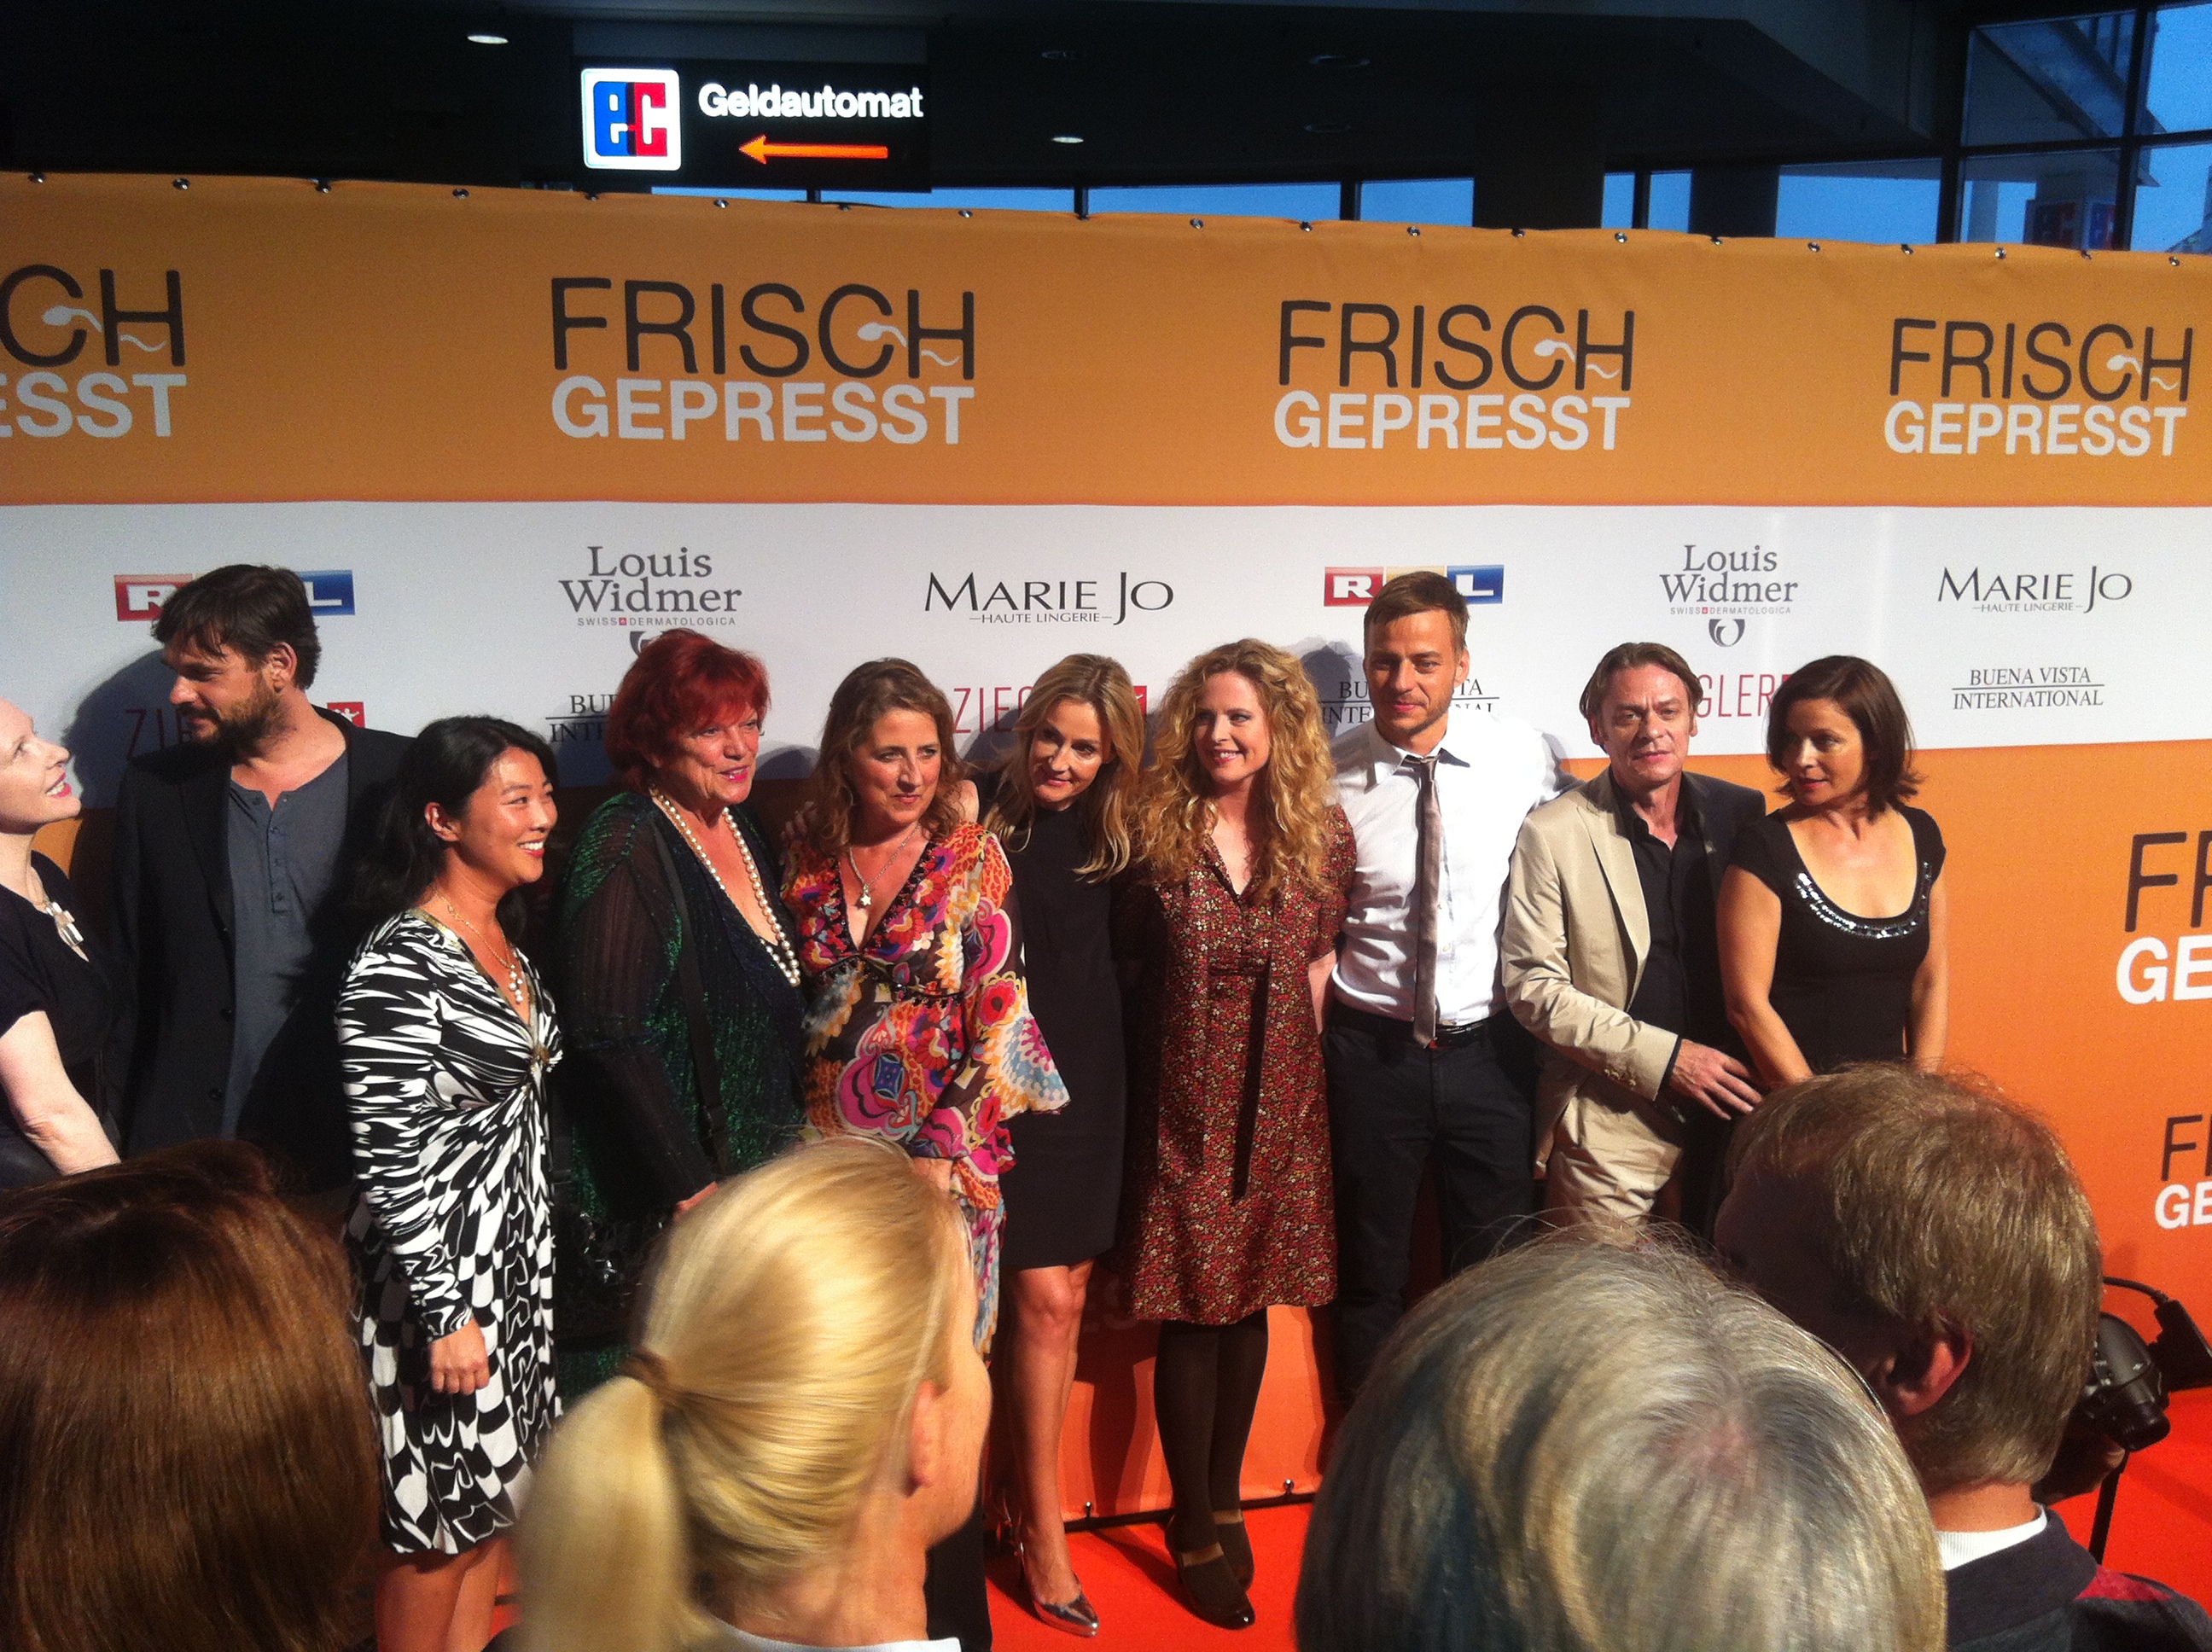 Gruppenfoto vom "Frisch gepresst"- Cast auf dem orangen Teppich (Quelle: Rosanna Preller)